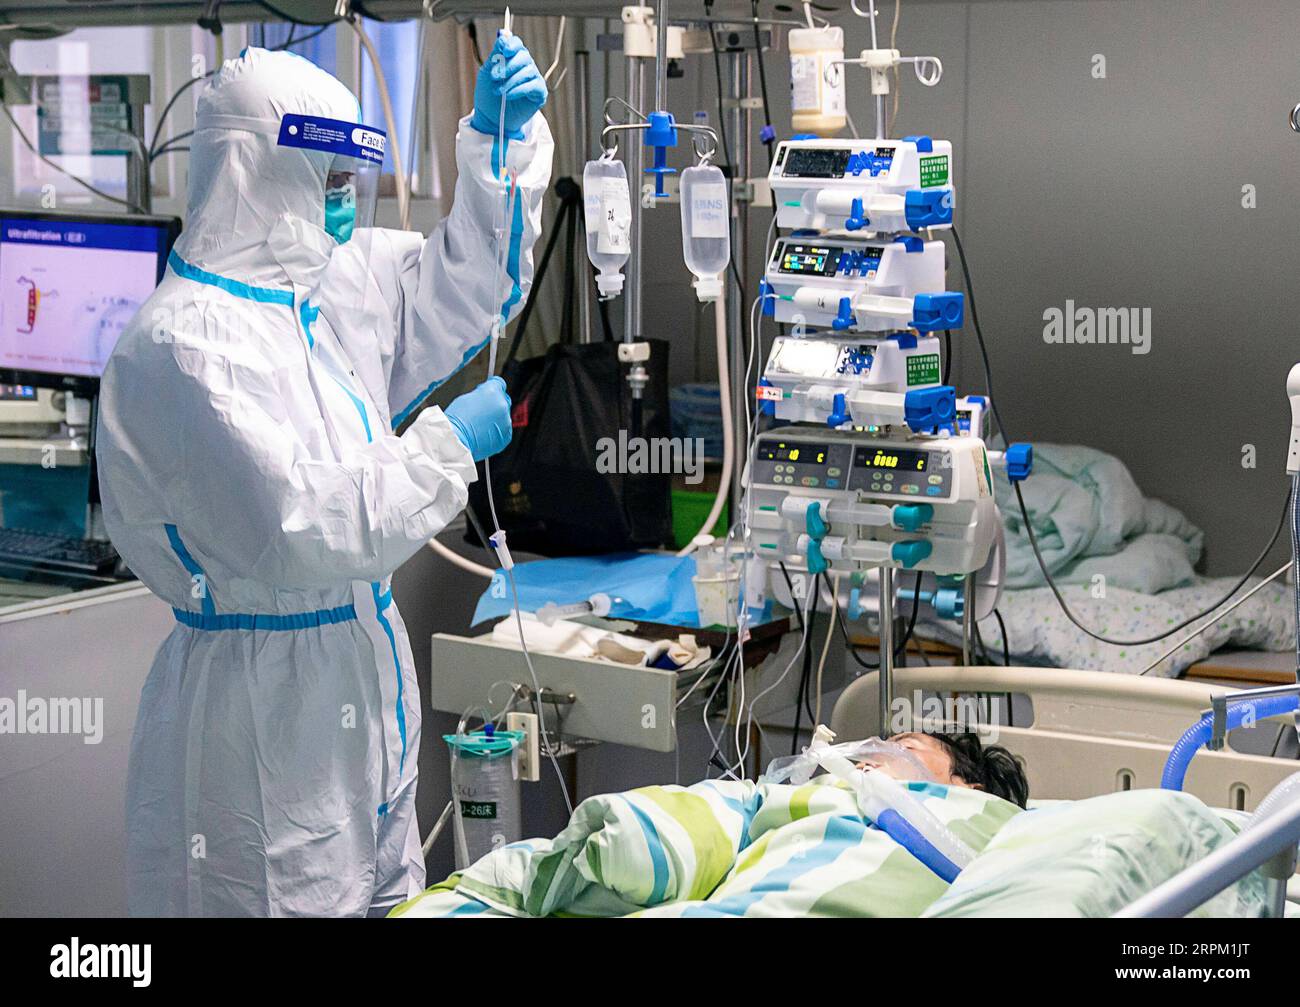 200124 -- WUHAN, 24 gennaio 2020 -- Un operatore medico controlla la goccia di un paziente nell'unità di terapia intensiva di terapia intensiva dell'ospedale Zhongnan dell'Università di Wuhan a Wuhan, nella provincia di Hubei della Cina centrale, 24 gennaio 2020. Giovedì a mezzanotte, la provincia di Hubei nella Cina centrale ha riportato 549 casi cumulativi confermati di nuova polmonite da coronavirus, con 495 a Wuhan, la capitale provinciale. CHINA-HUBEI-WUHAN-OPERATORE MEDICO CN XIONGXQI PUBLICATIONXNOTXINXCHN Foto Stock